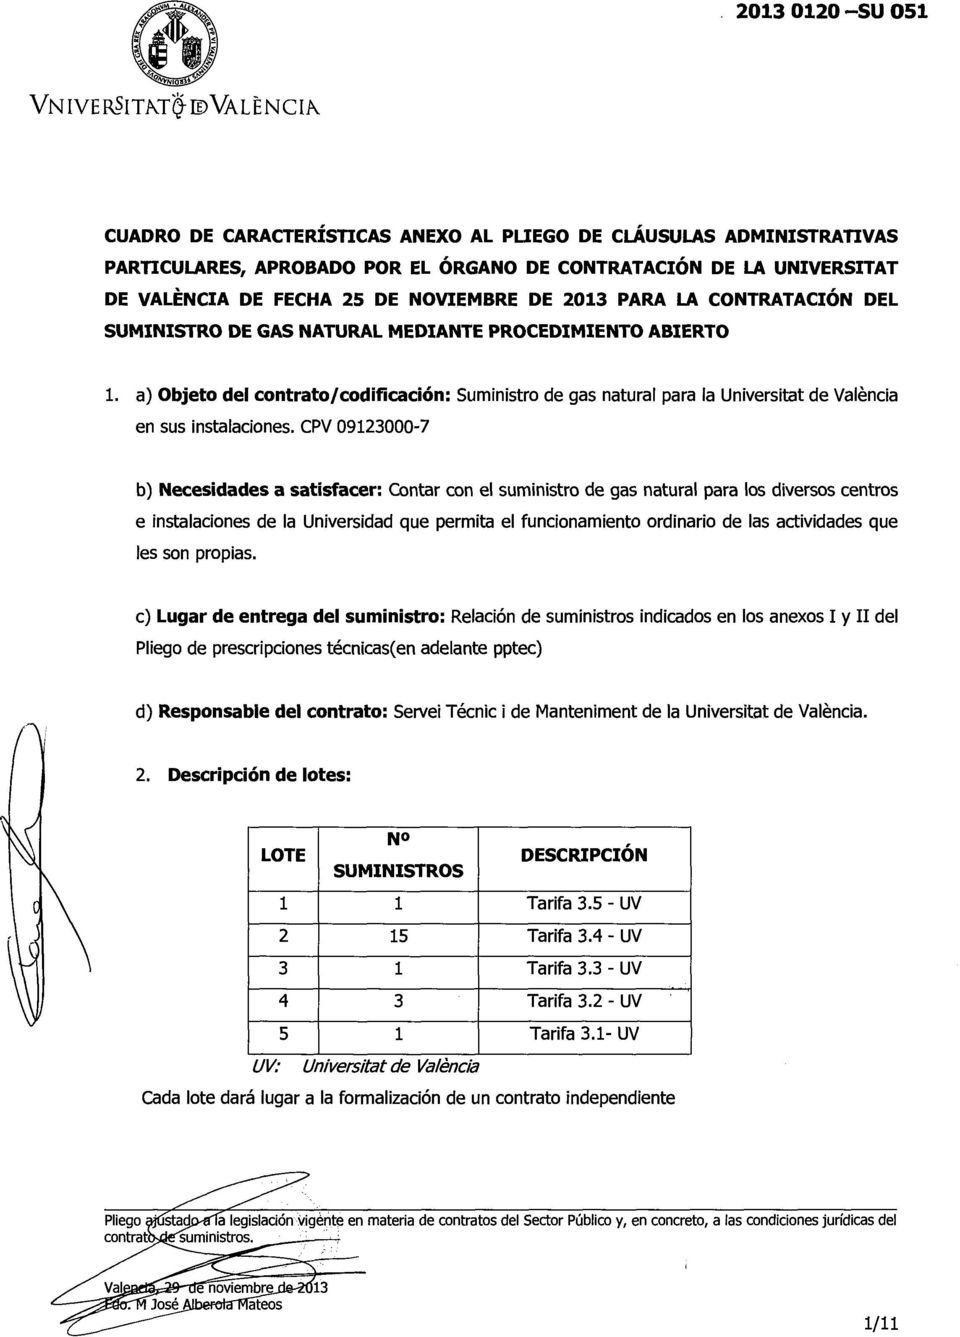 a) Objeto del contrato/codificación: Suministro de gas natural para la Universitat de Valencia en sus instalaciones.